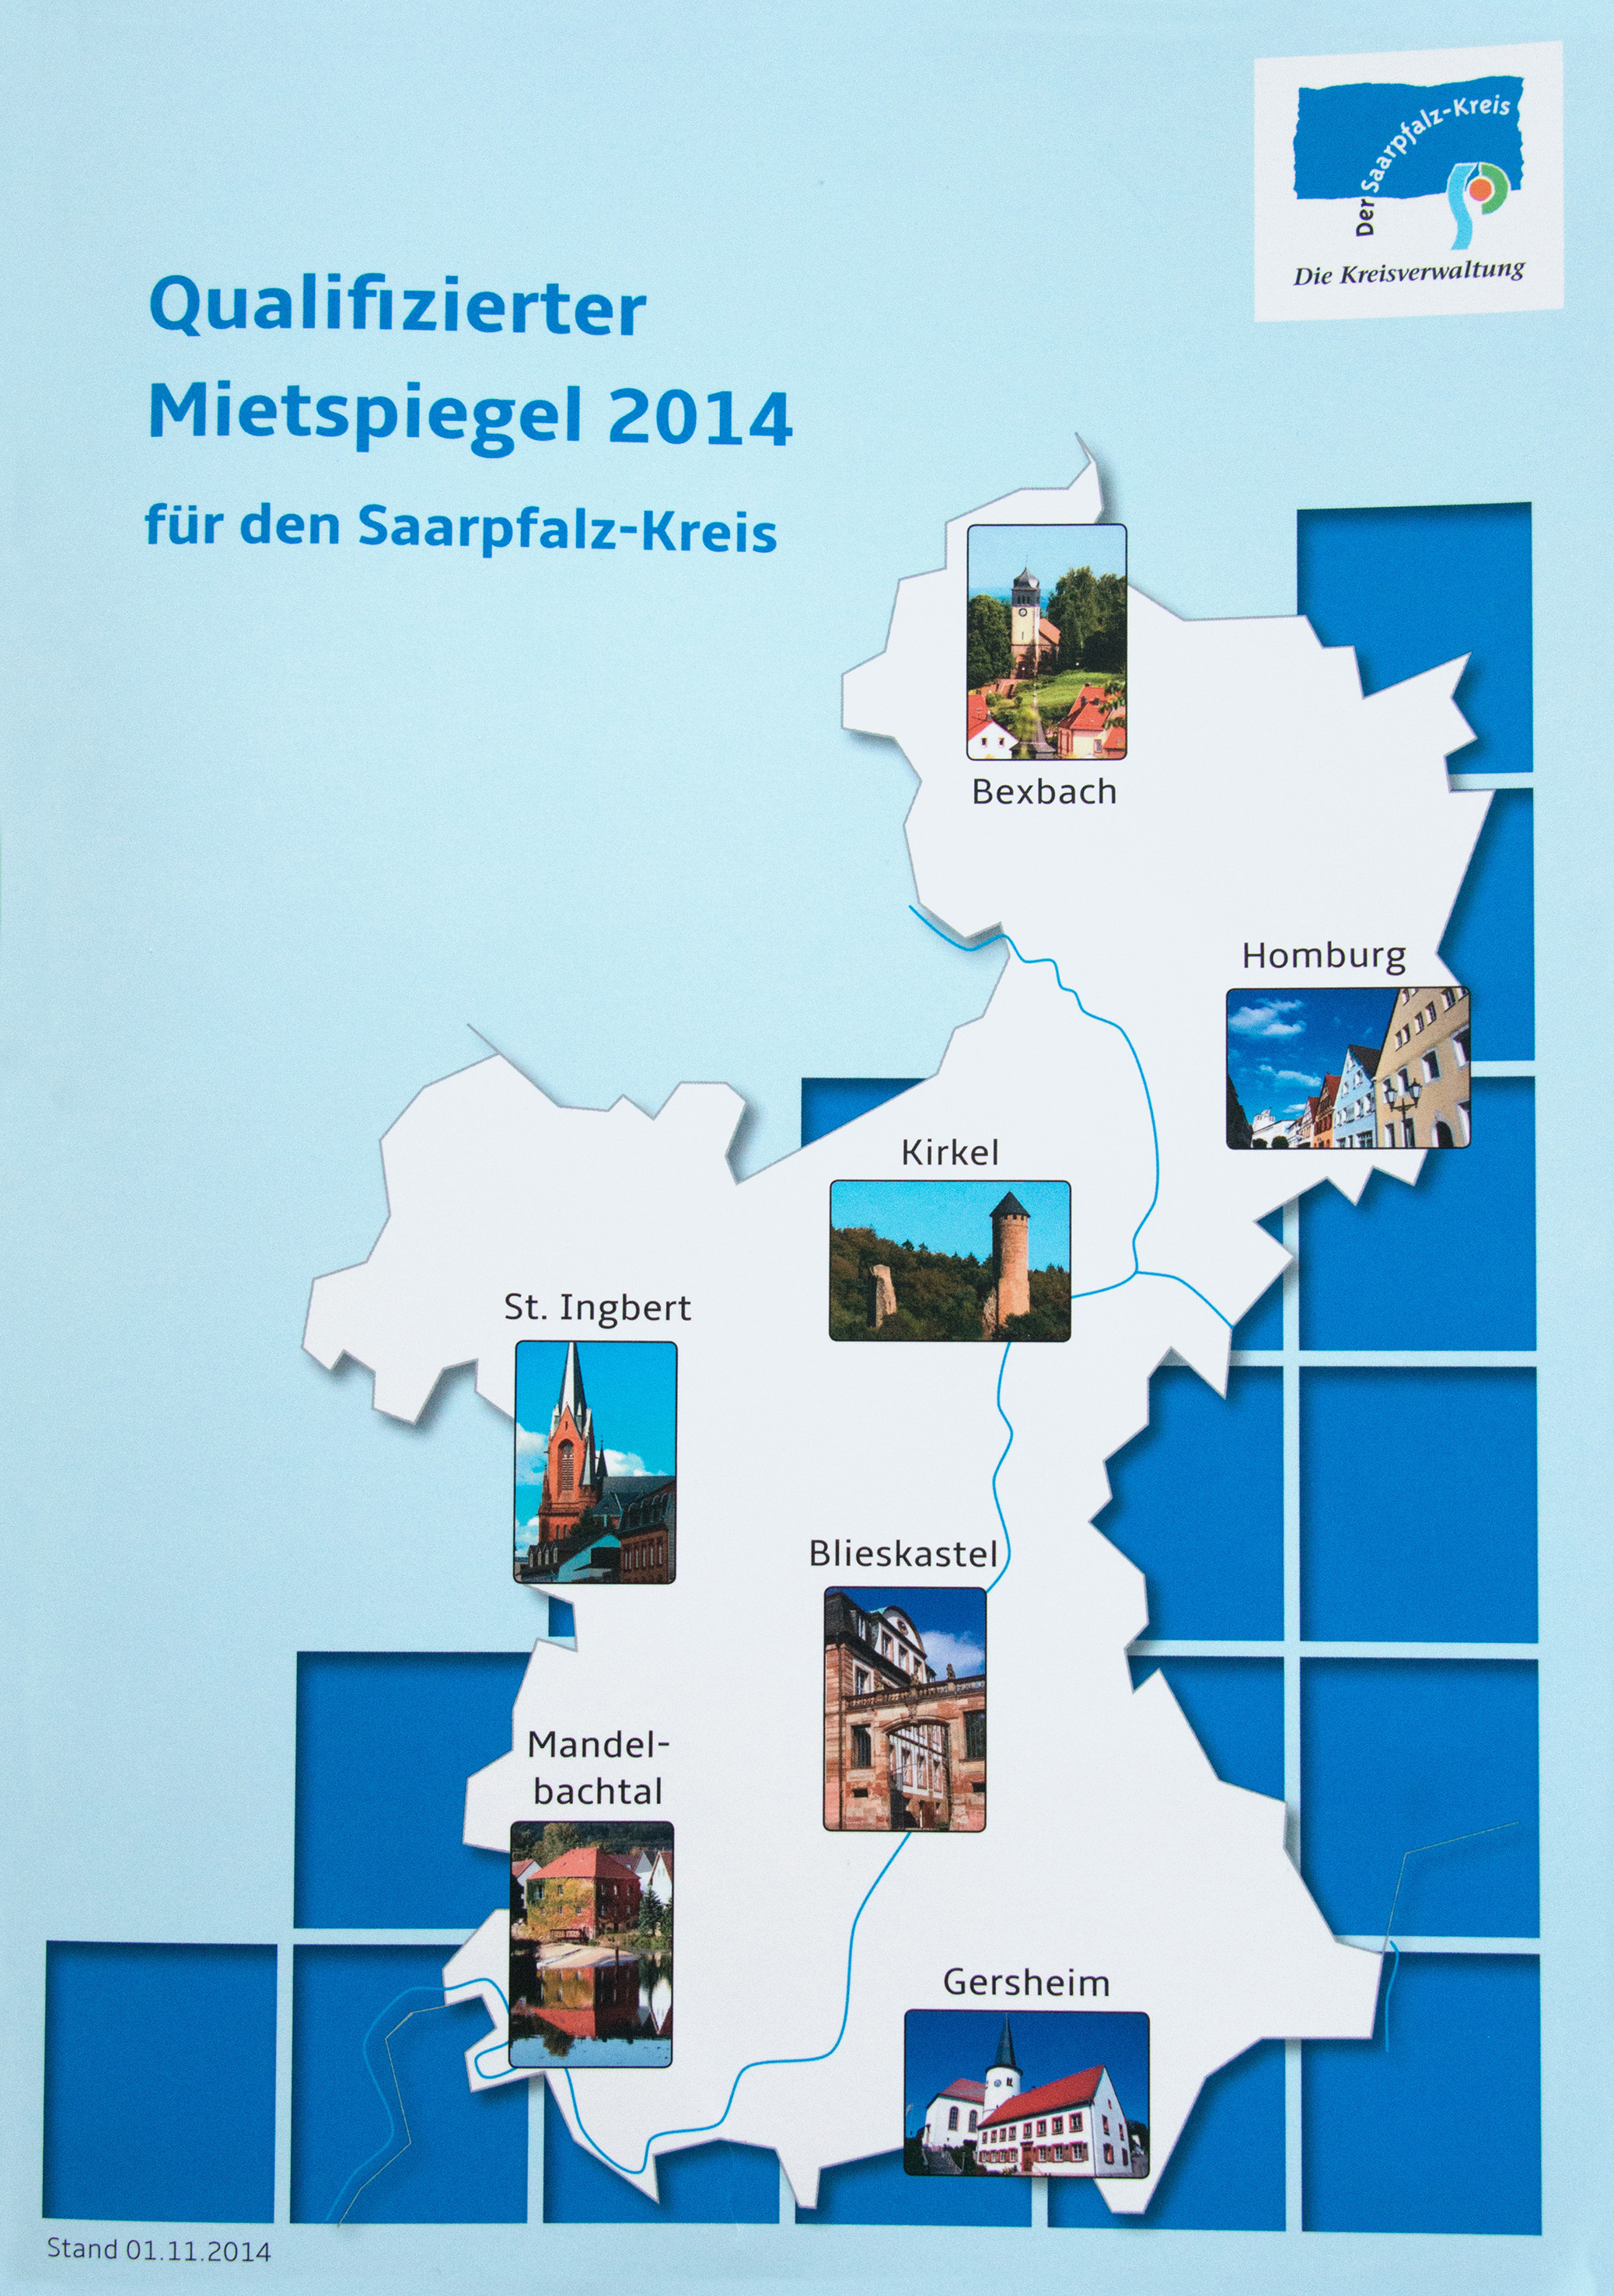 Broschüre „Qualifizierter Mietspiegel 2014“ bei der Stadtverwaltung erhältlich